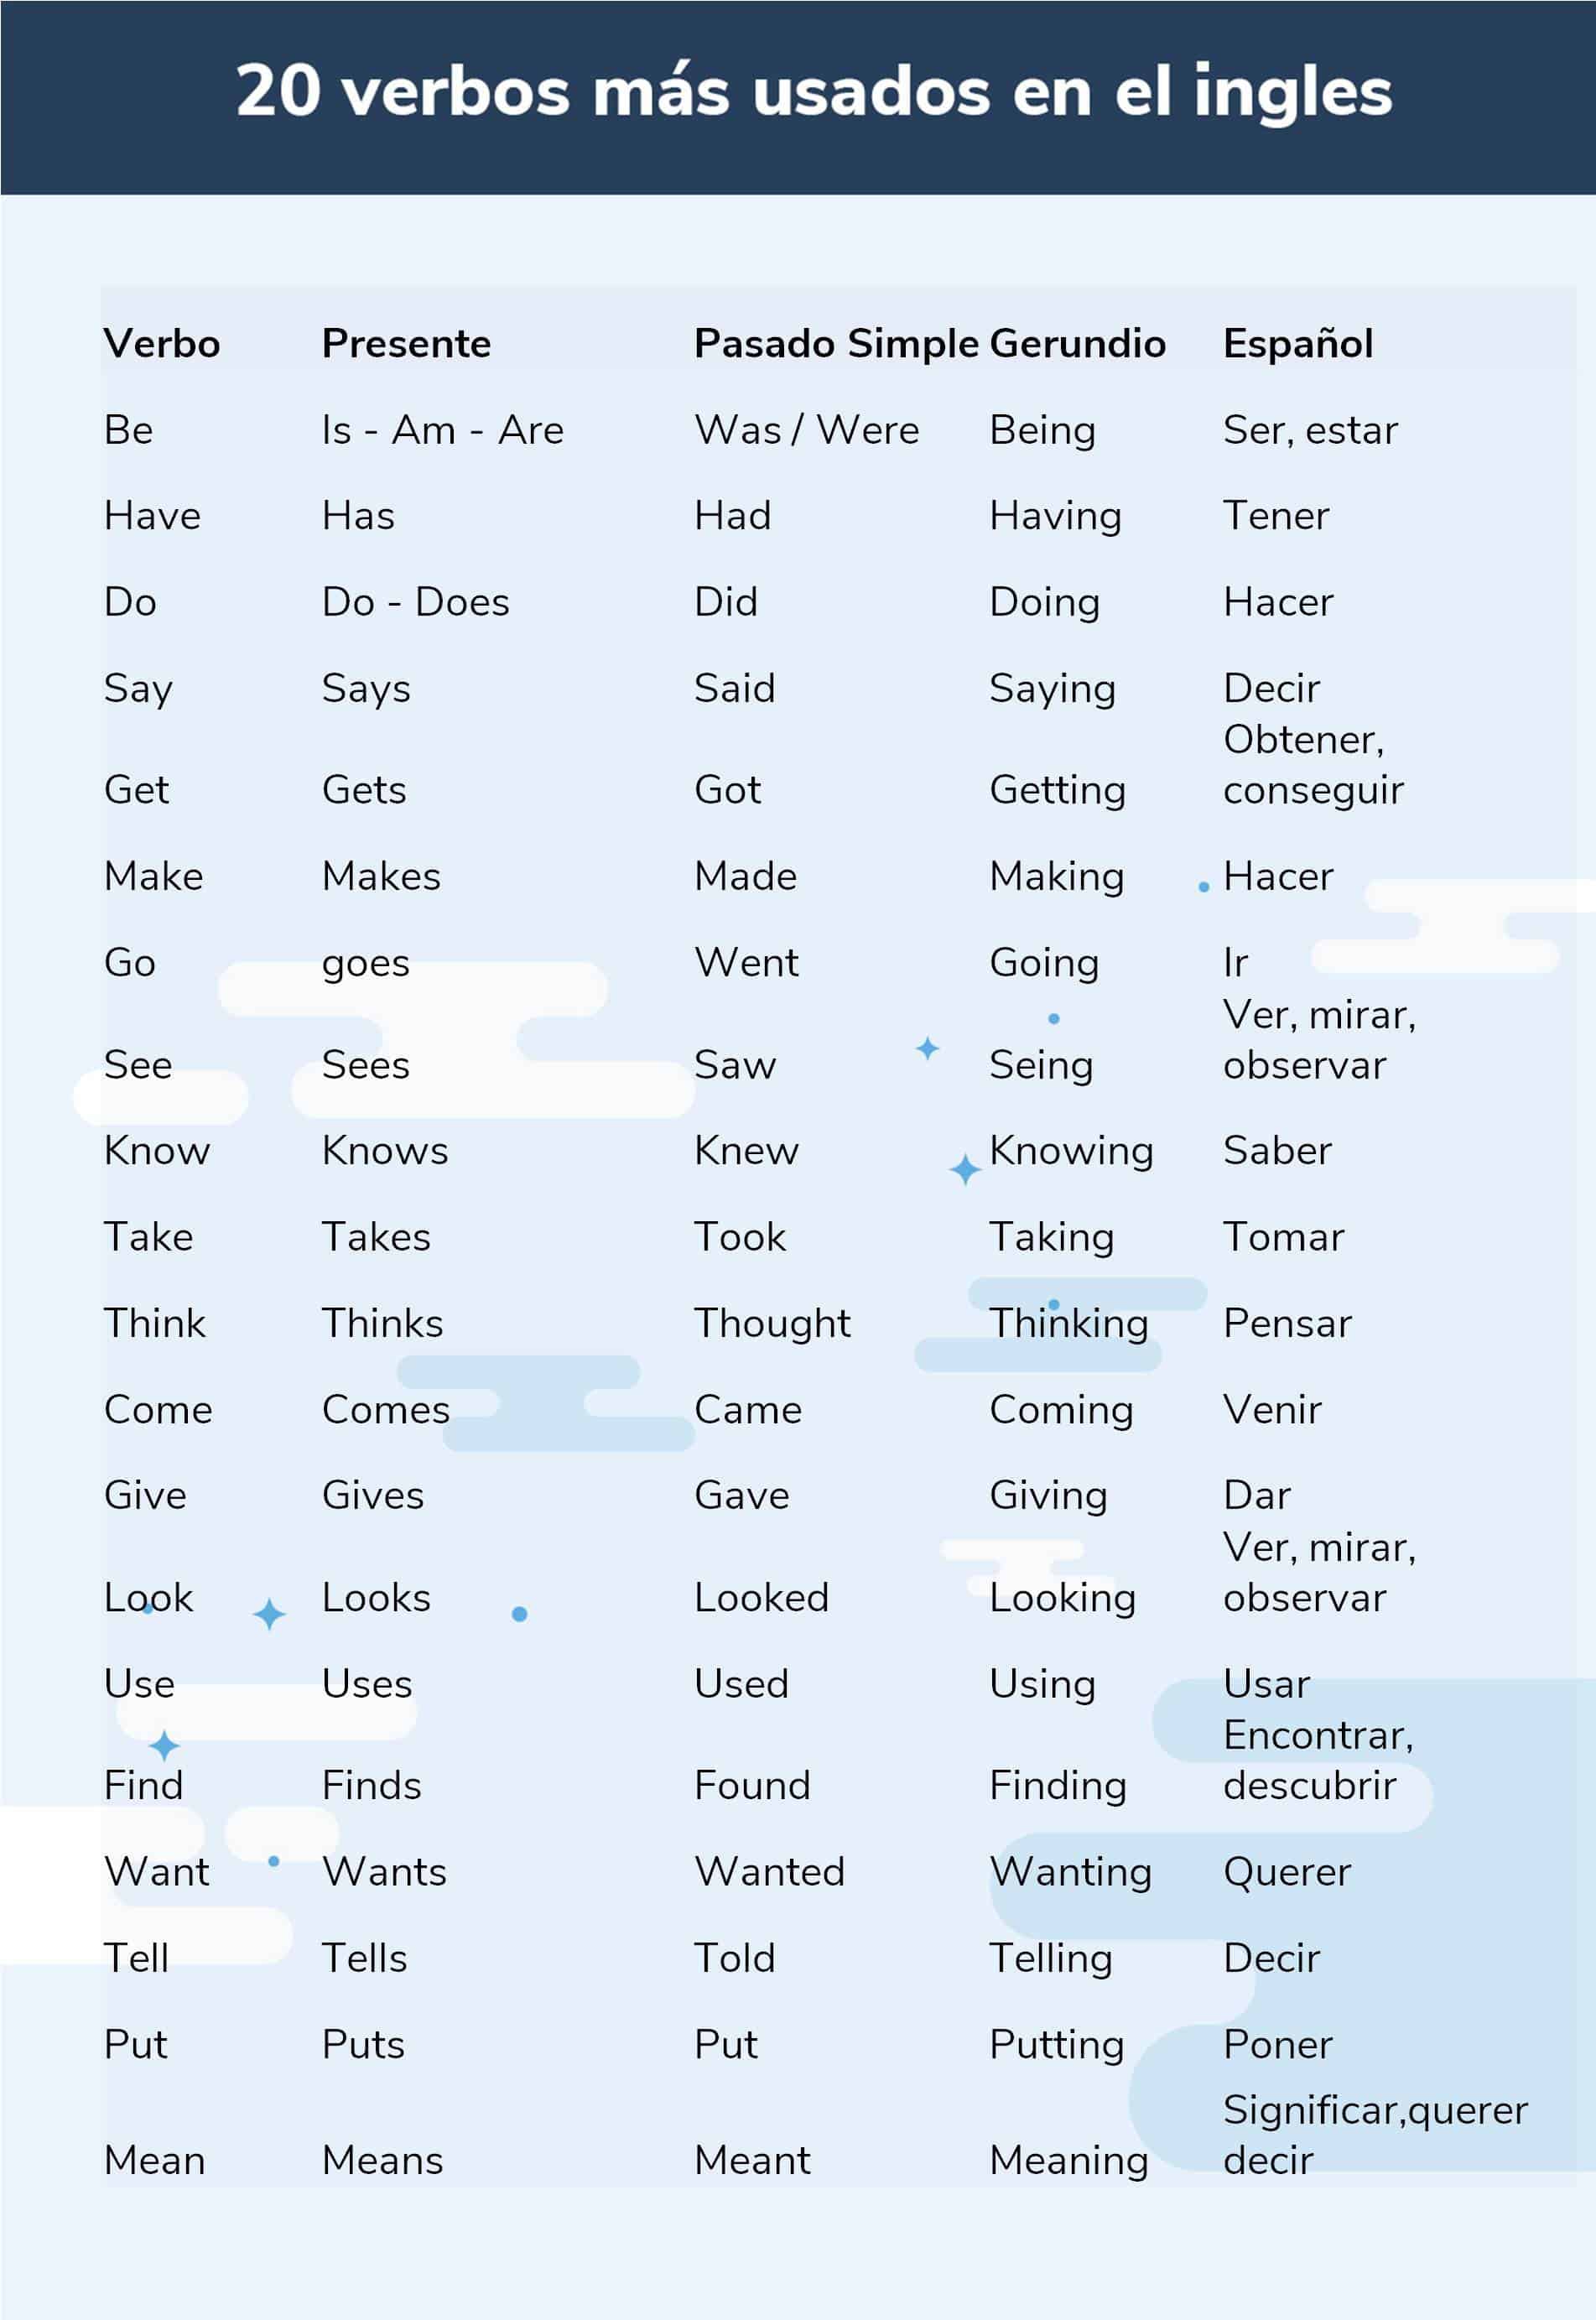 20 verbos en ingles mas usados